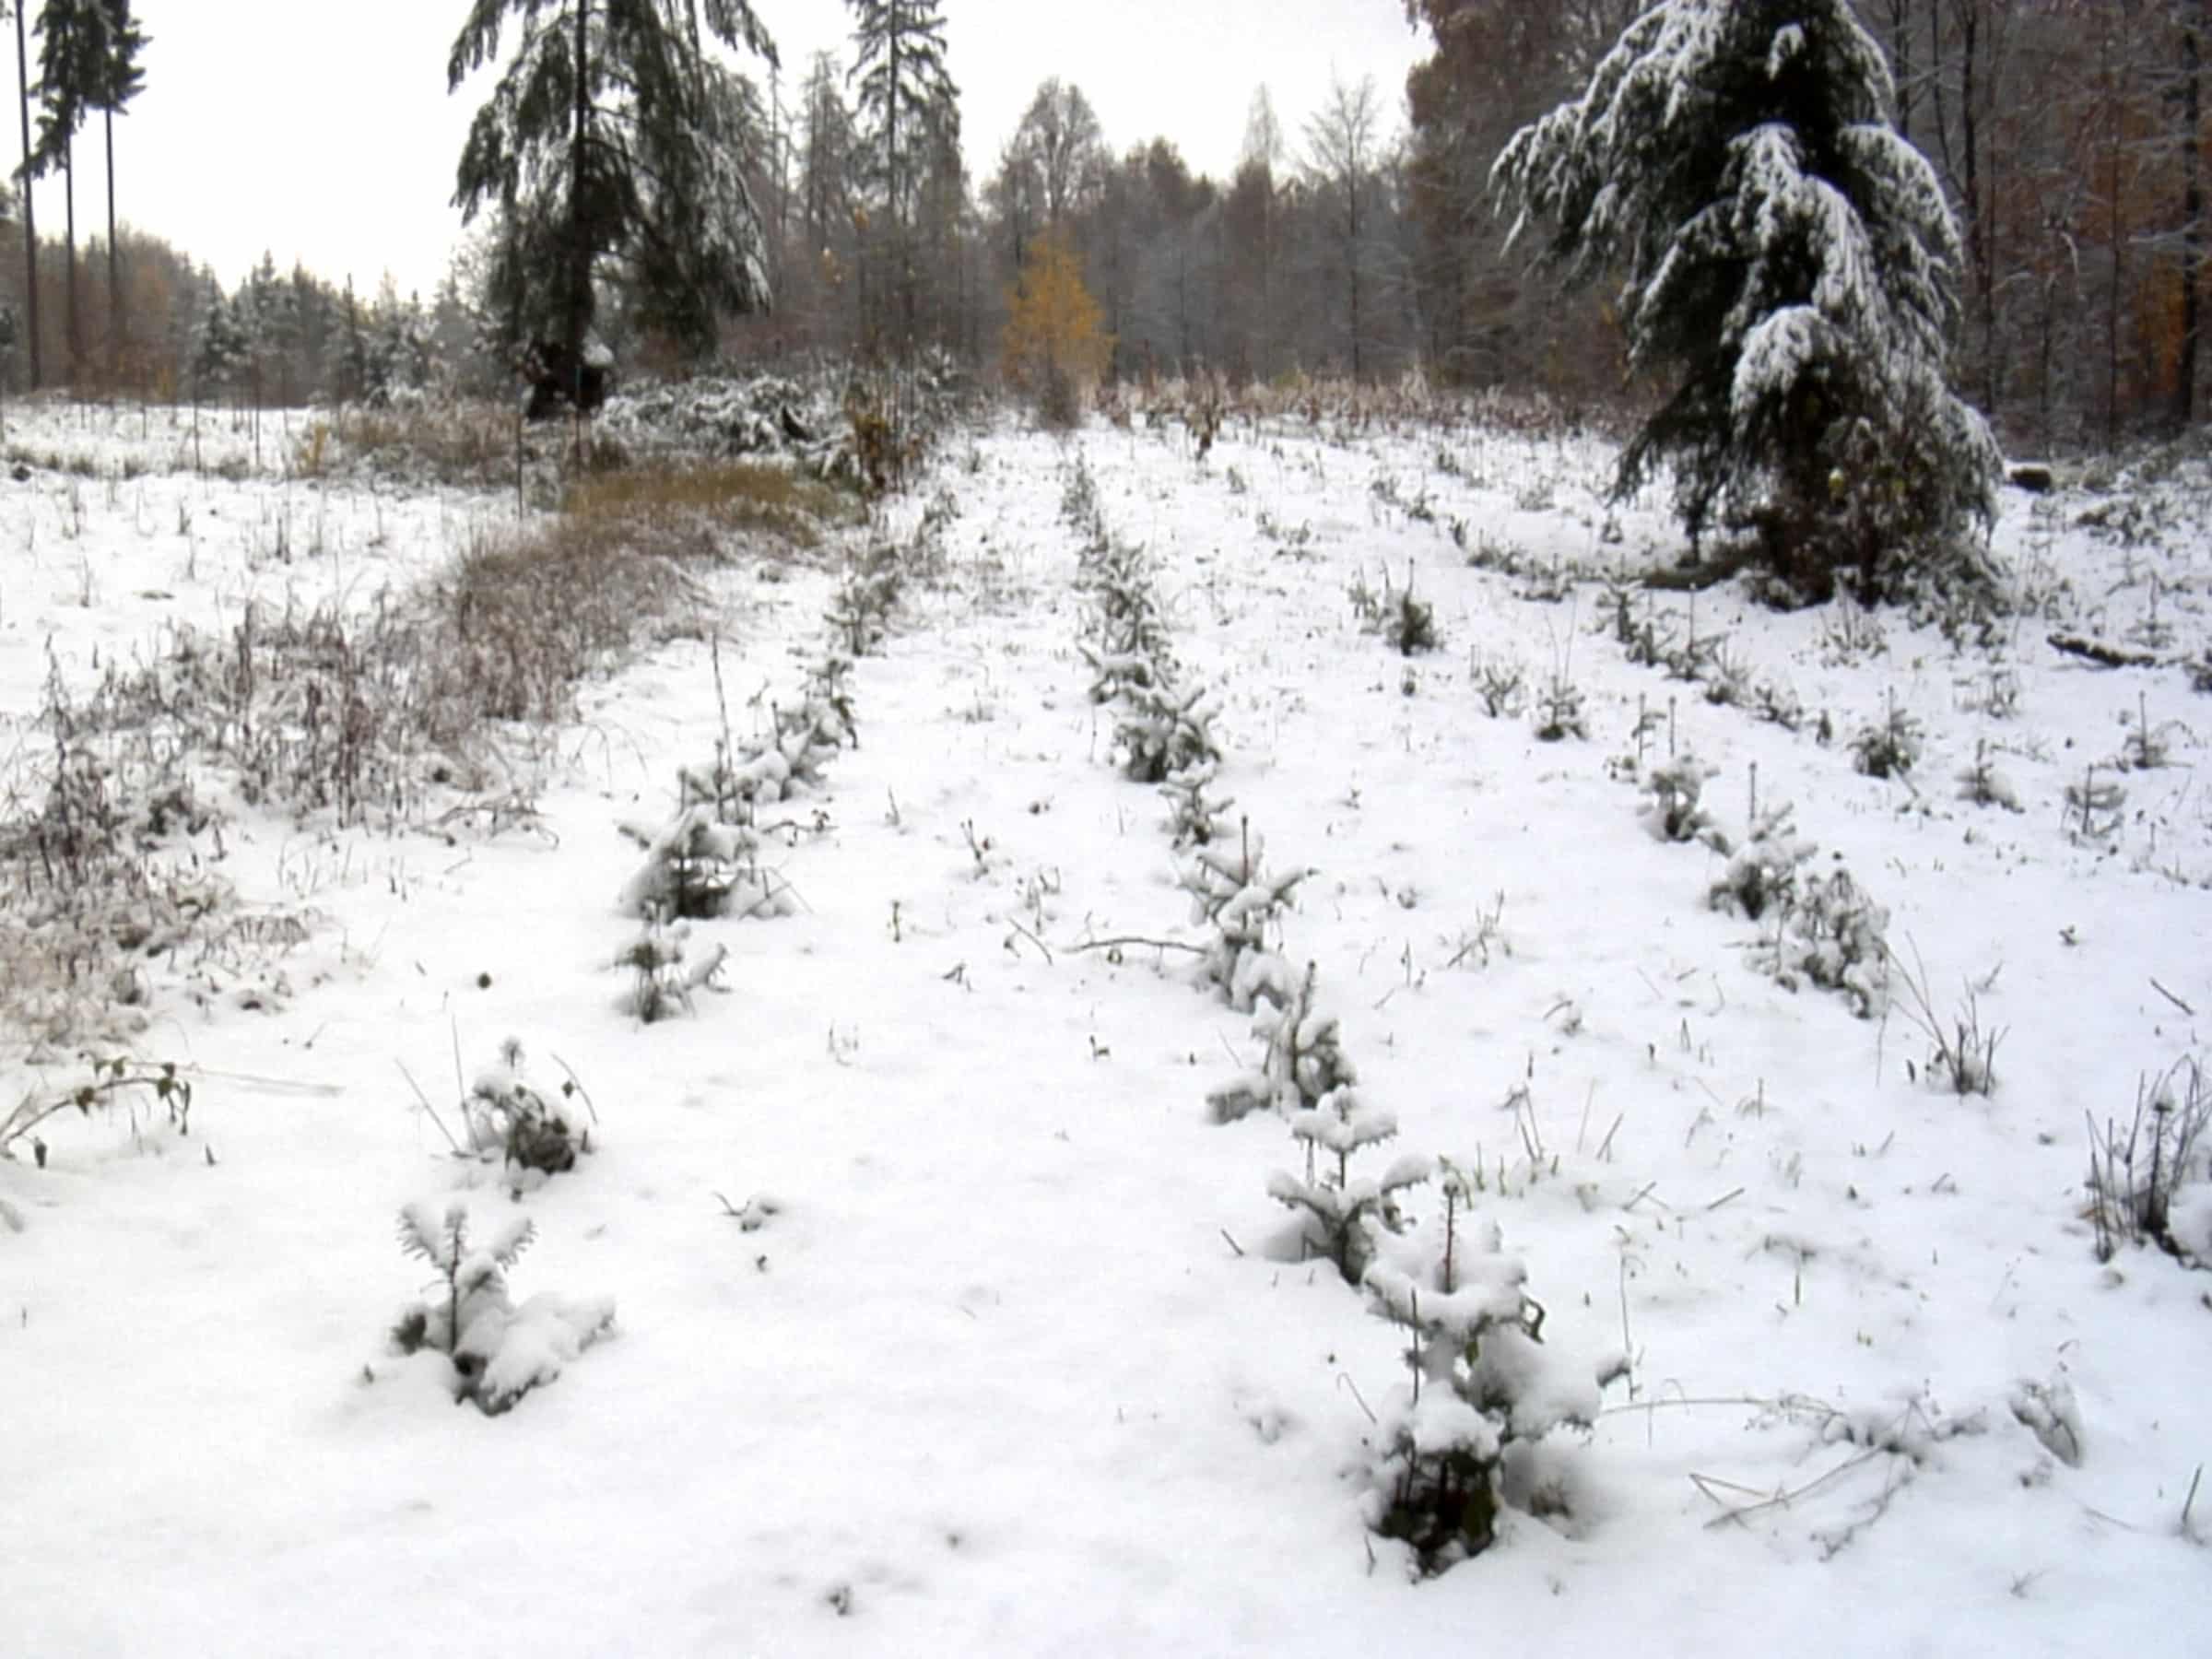 Schnee bedeckt den Boden und die Bäume im Klimwald.